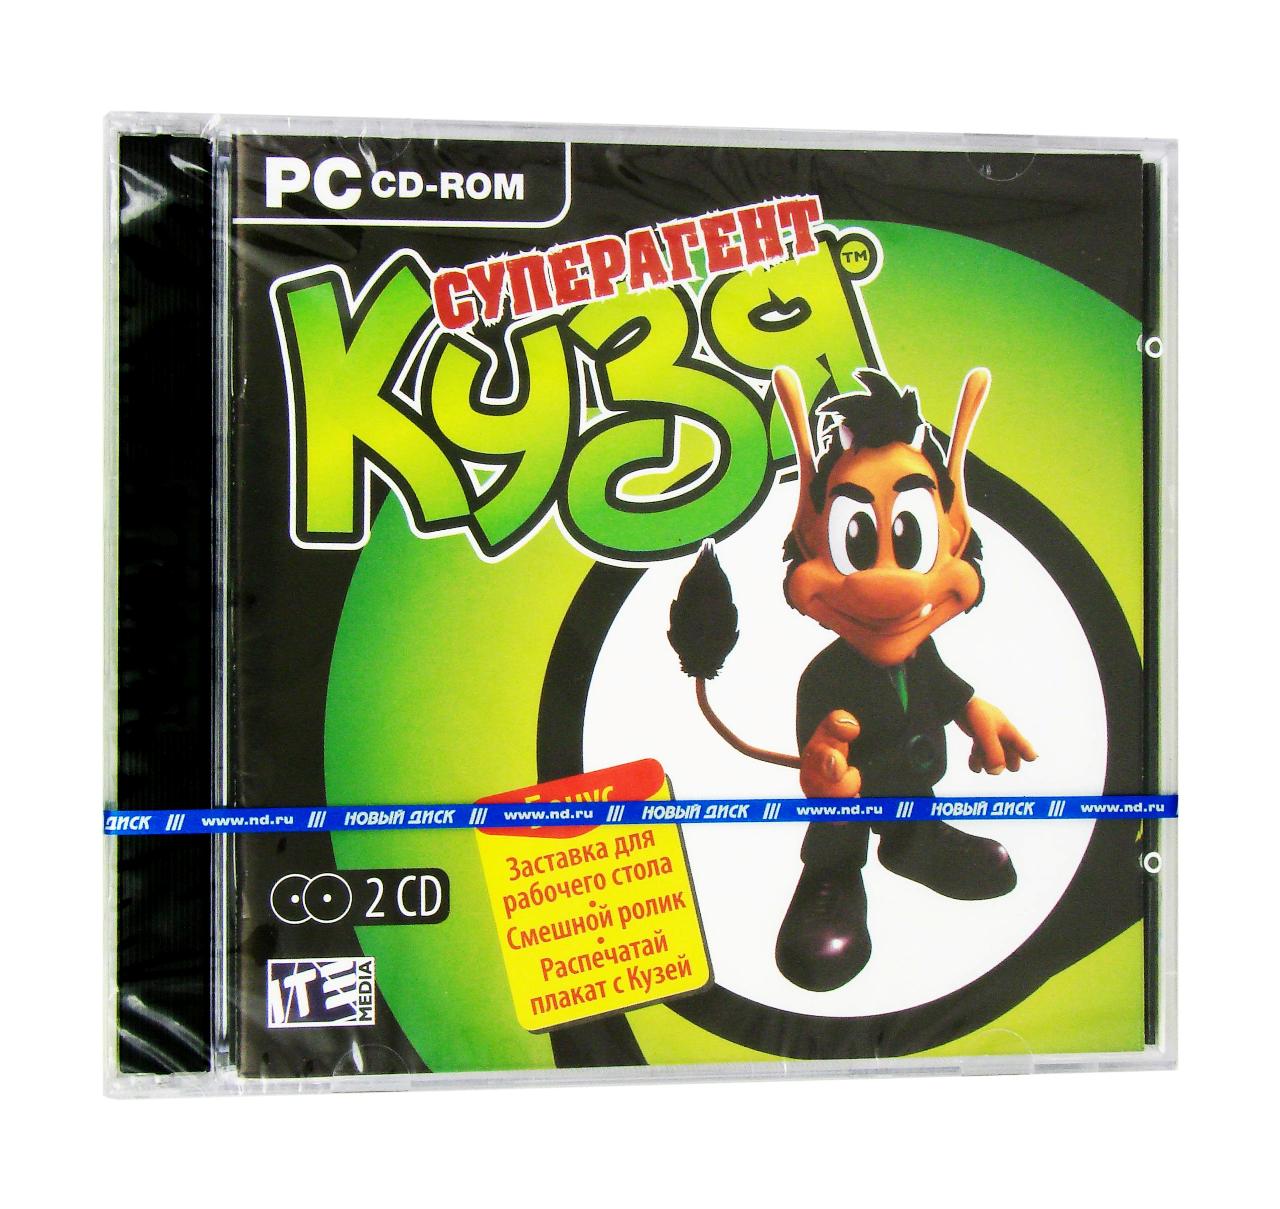 Компьютерный компакт-диск Кузя: Суперагент (ПК), фирма "Новый диск", 2CD